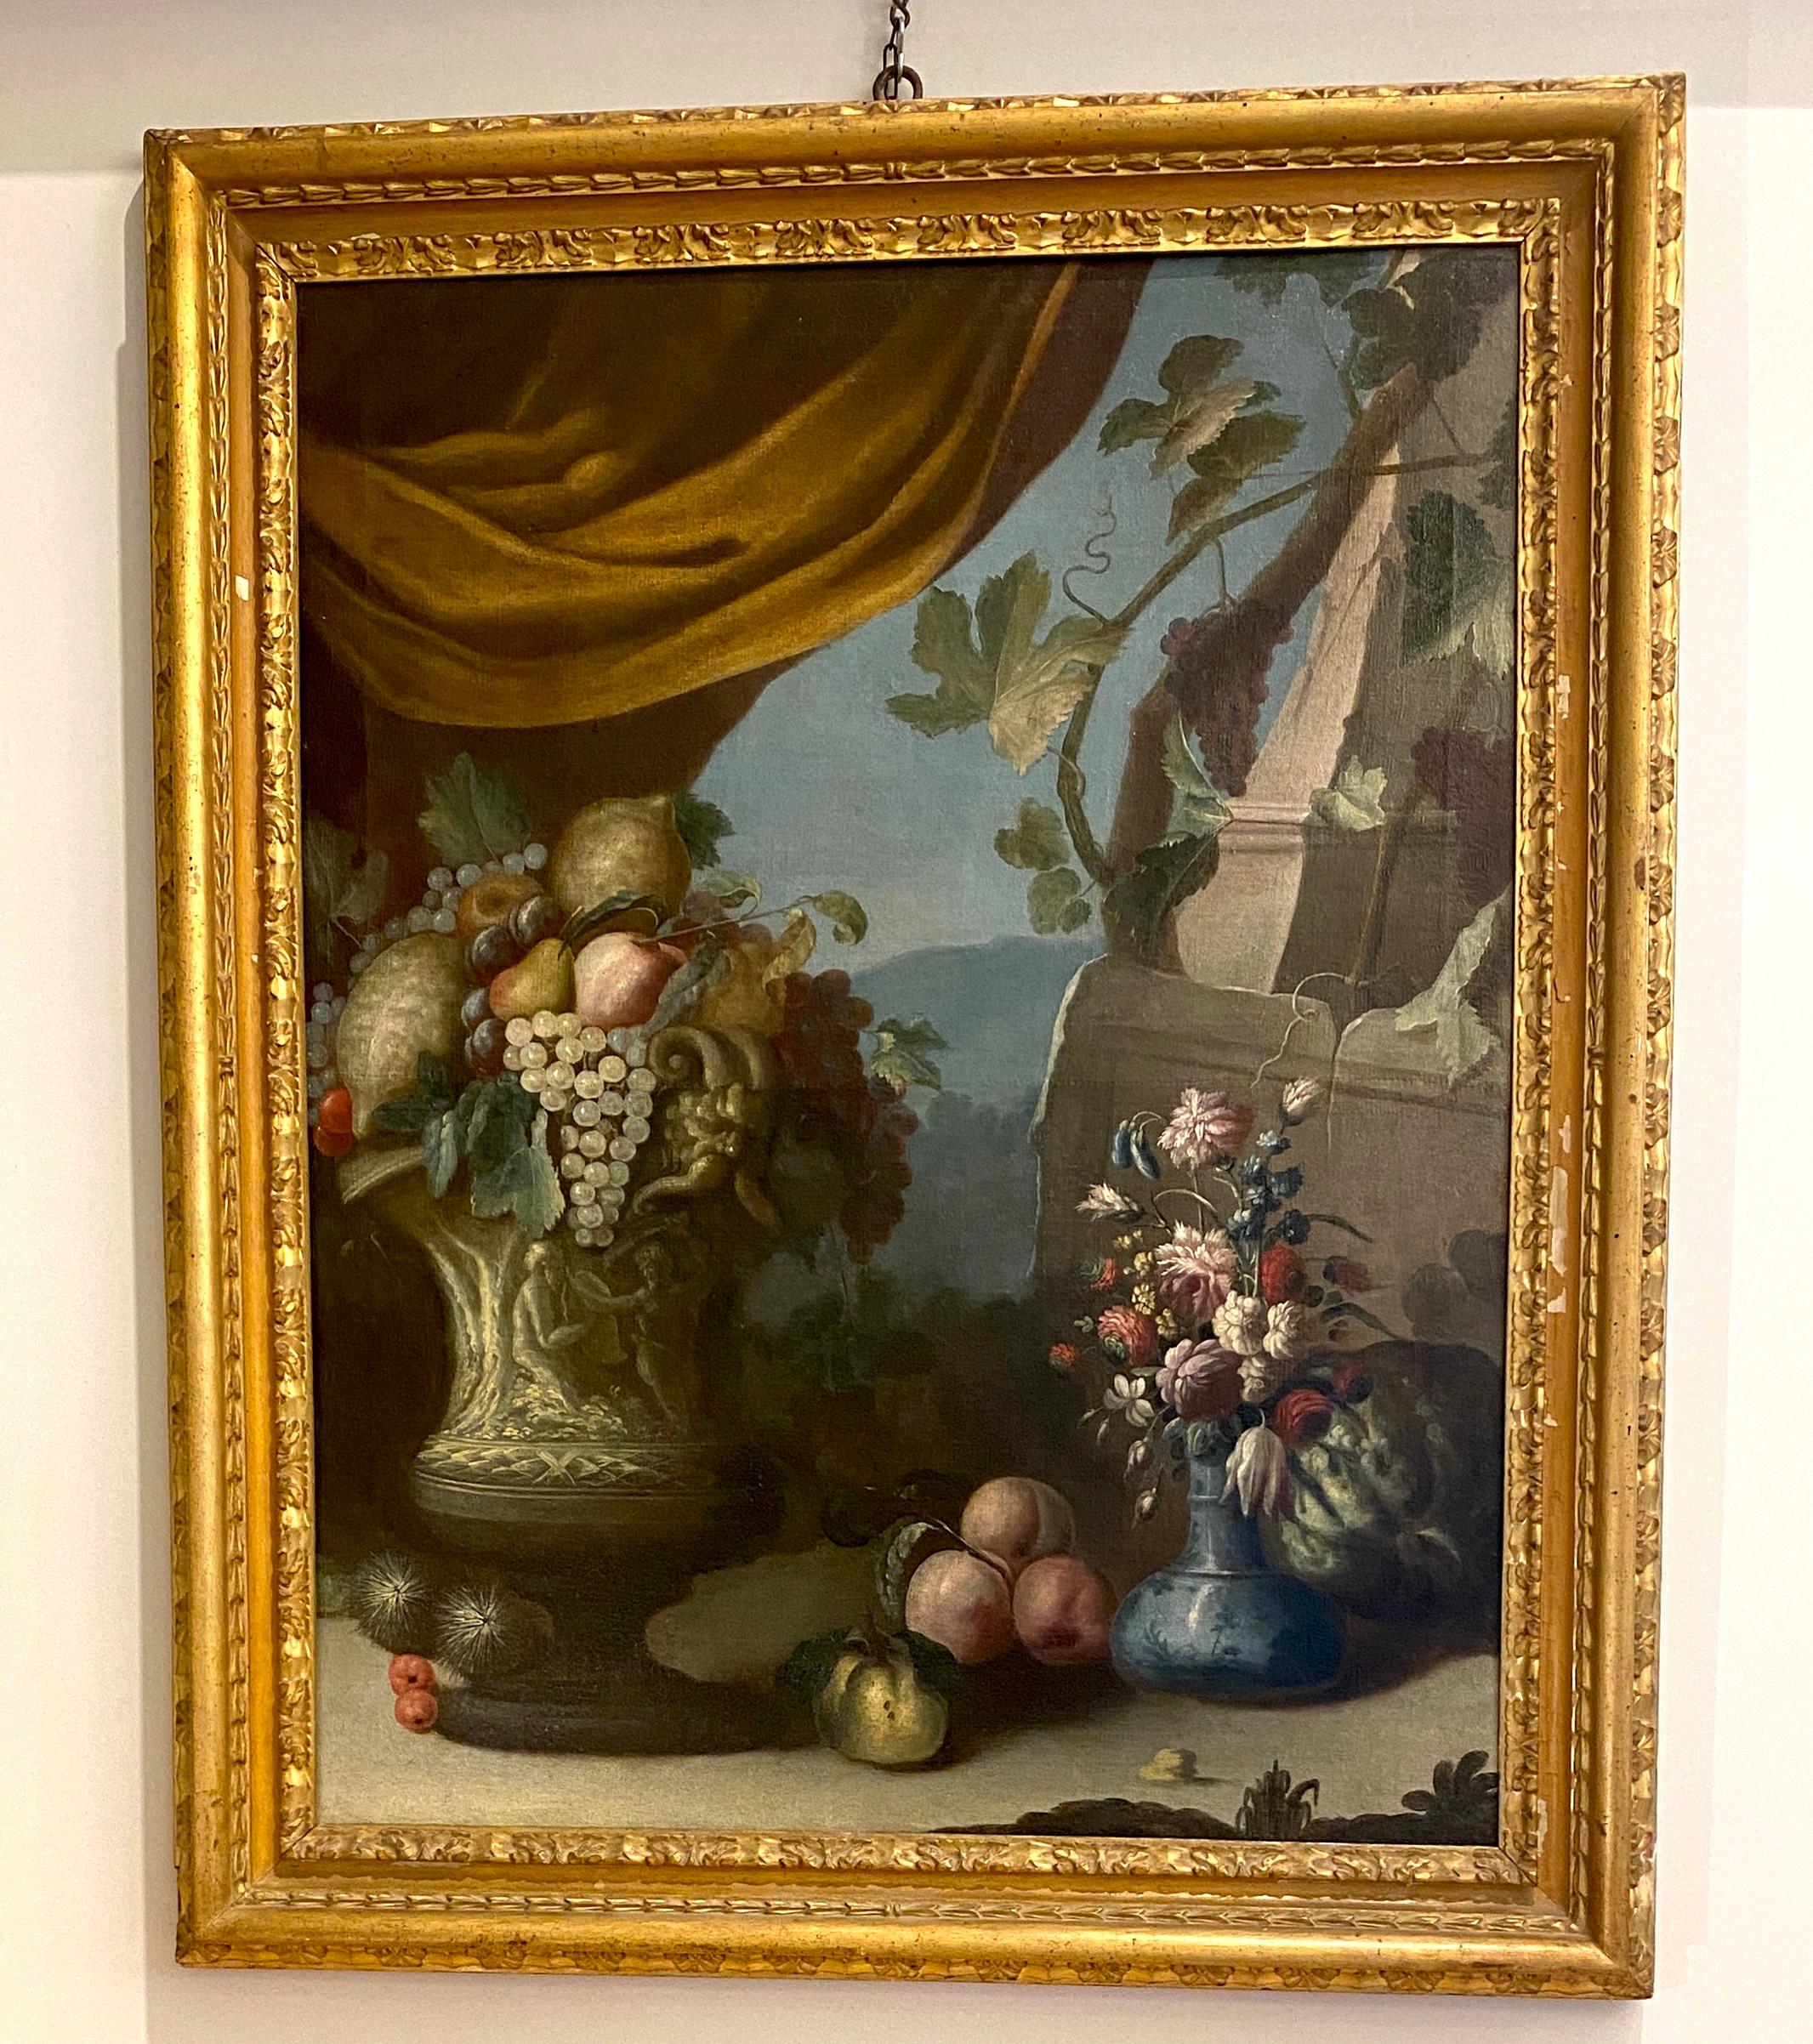 Paire d'exceptionnelles natures mortes italiennes du XVIIIe siècle  - Maîtres anciens Painting par Unknown